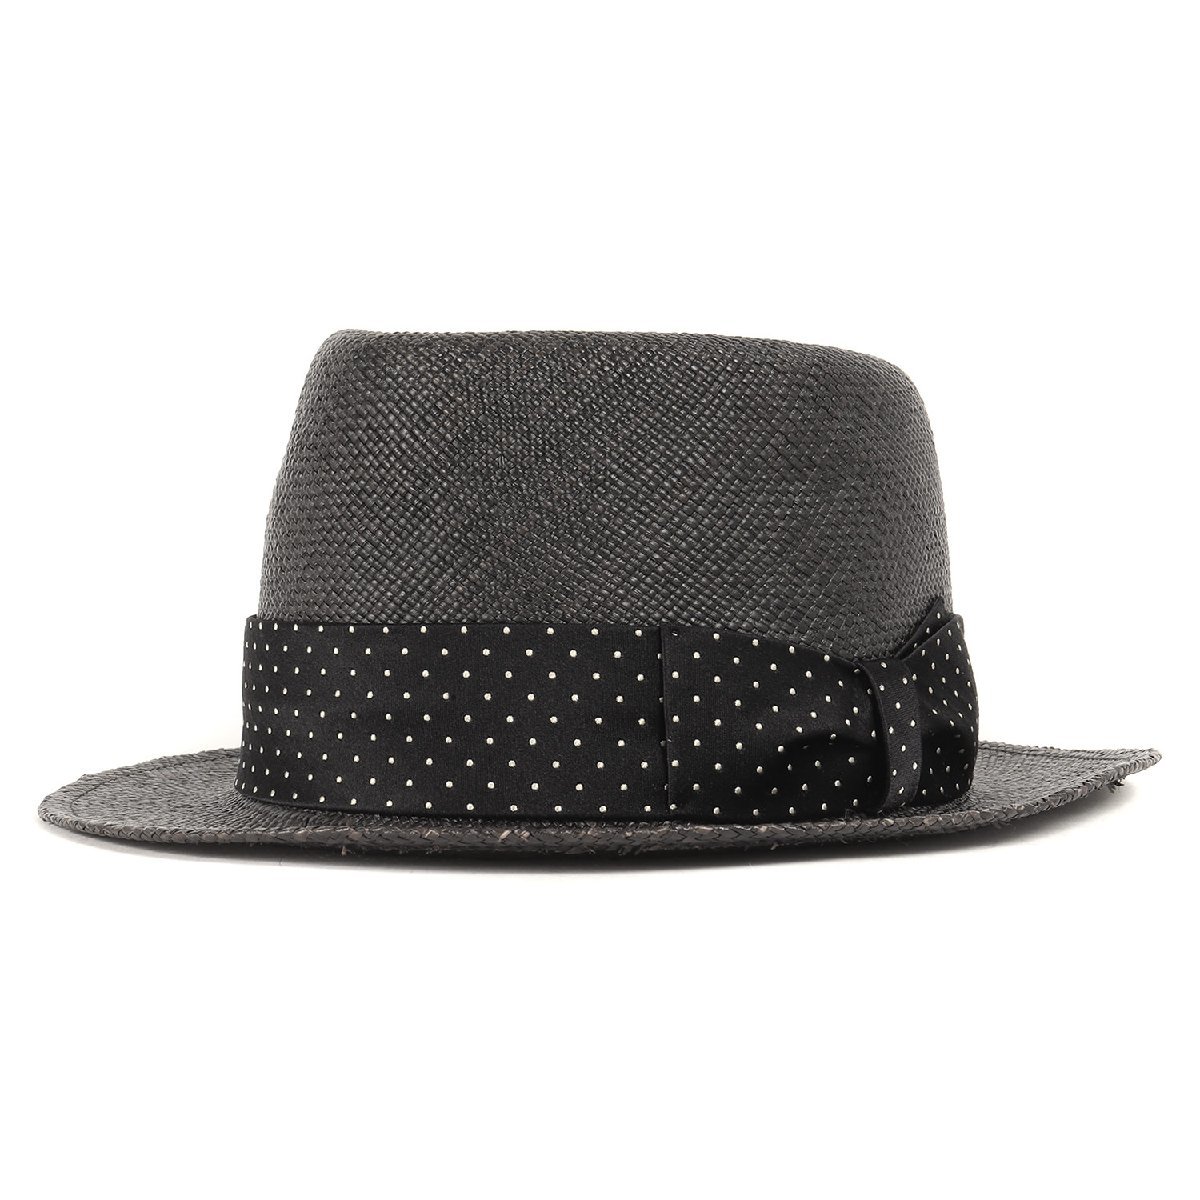 お手頃価格 帽子 黒 ブラック パナマハット ドットリボン付き サイズ:L